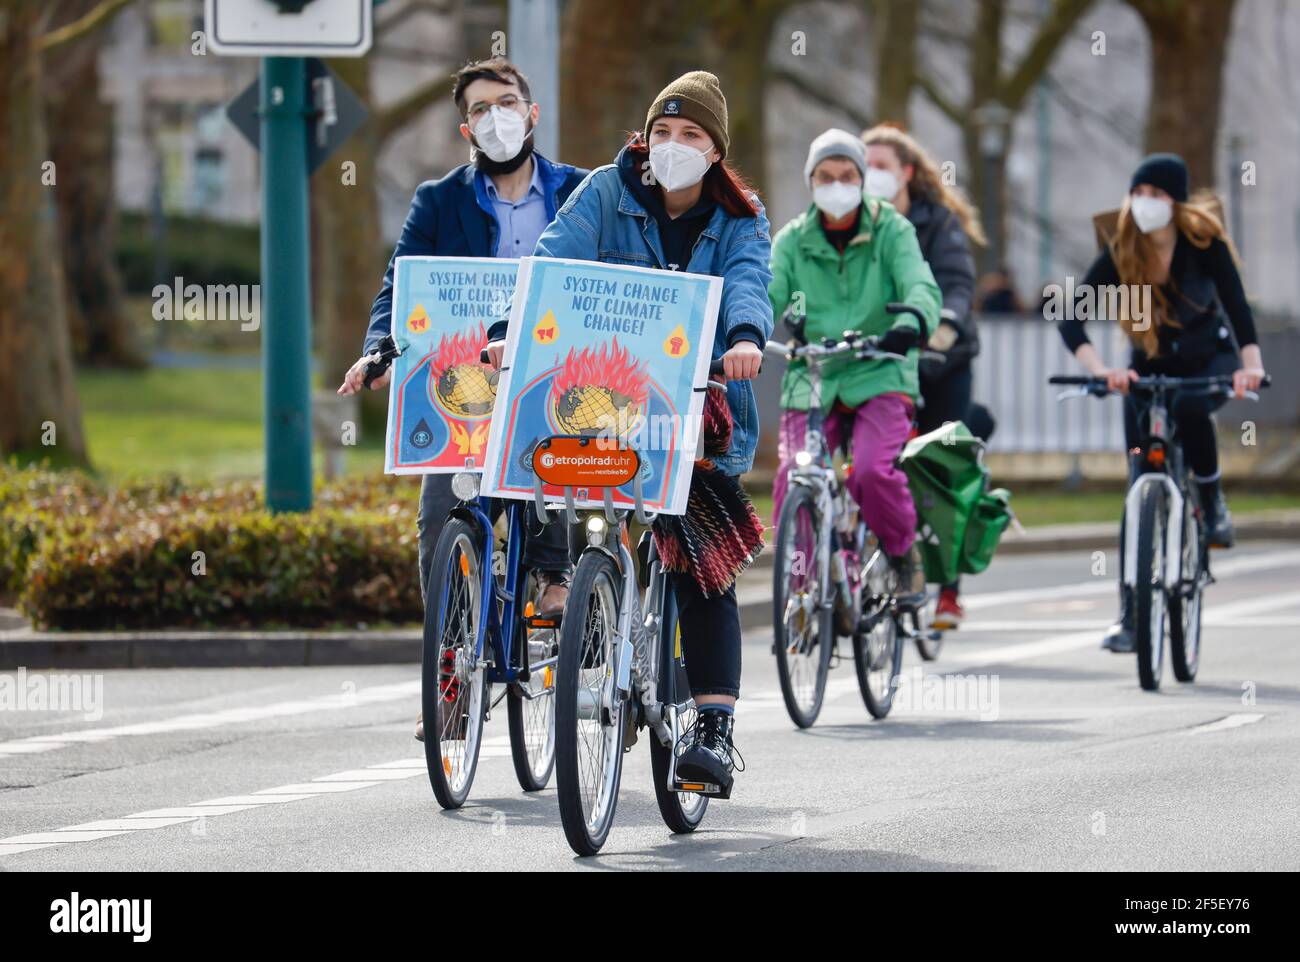 Essen, Nordrhein-Westfalen, Deutschland - Freitags für die Zukunft demonstrieren Klimaaktivisten in Zeiten der Corona Pandemie Corona konform mit Maske an Stockfoto